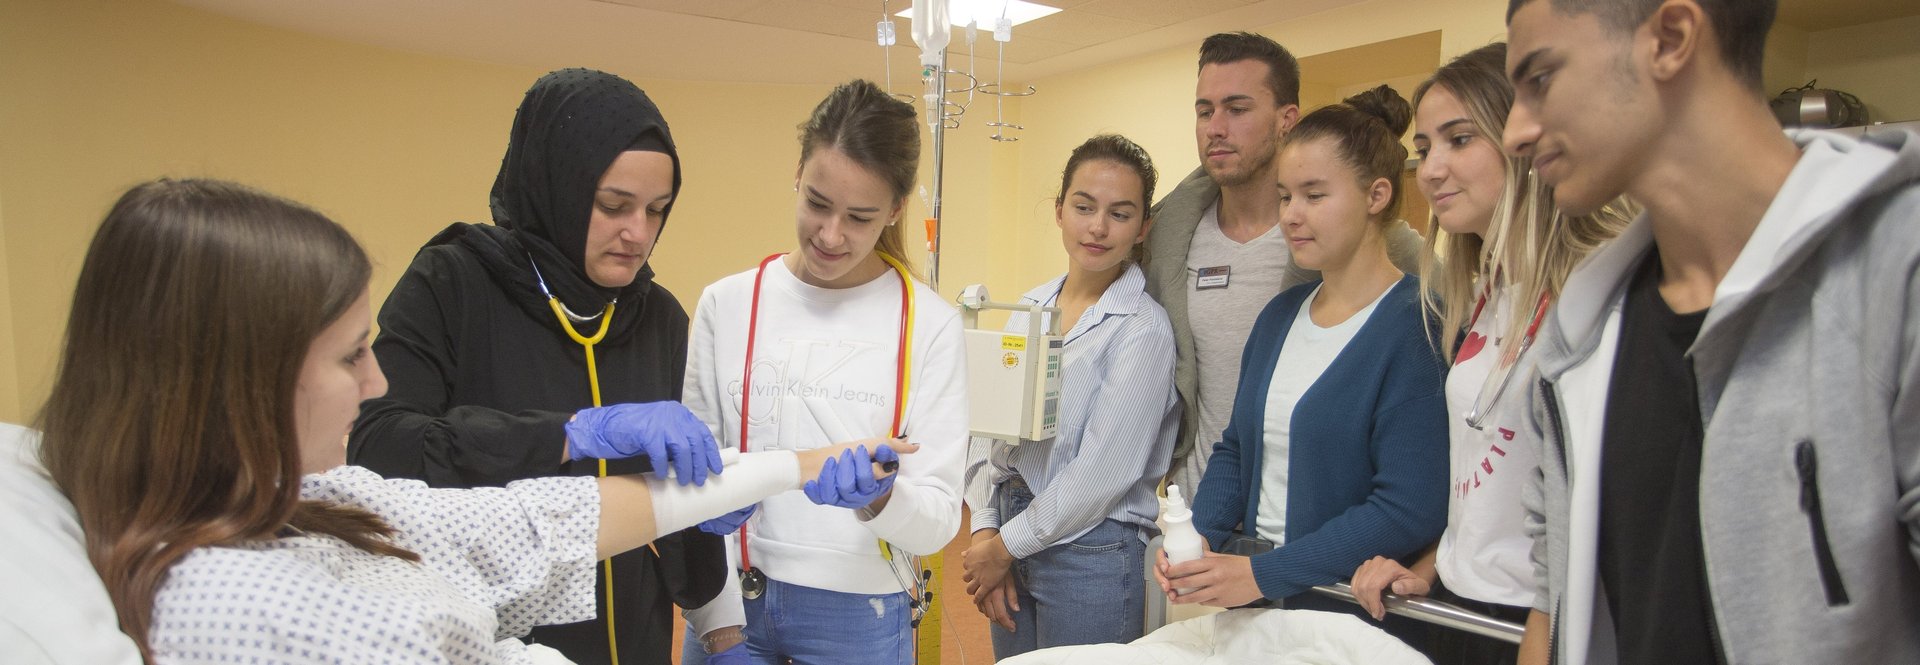 Schüler mit Patientin in Lehrsituation am Krankenbett 